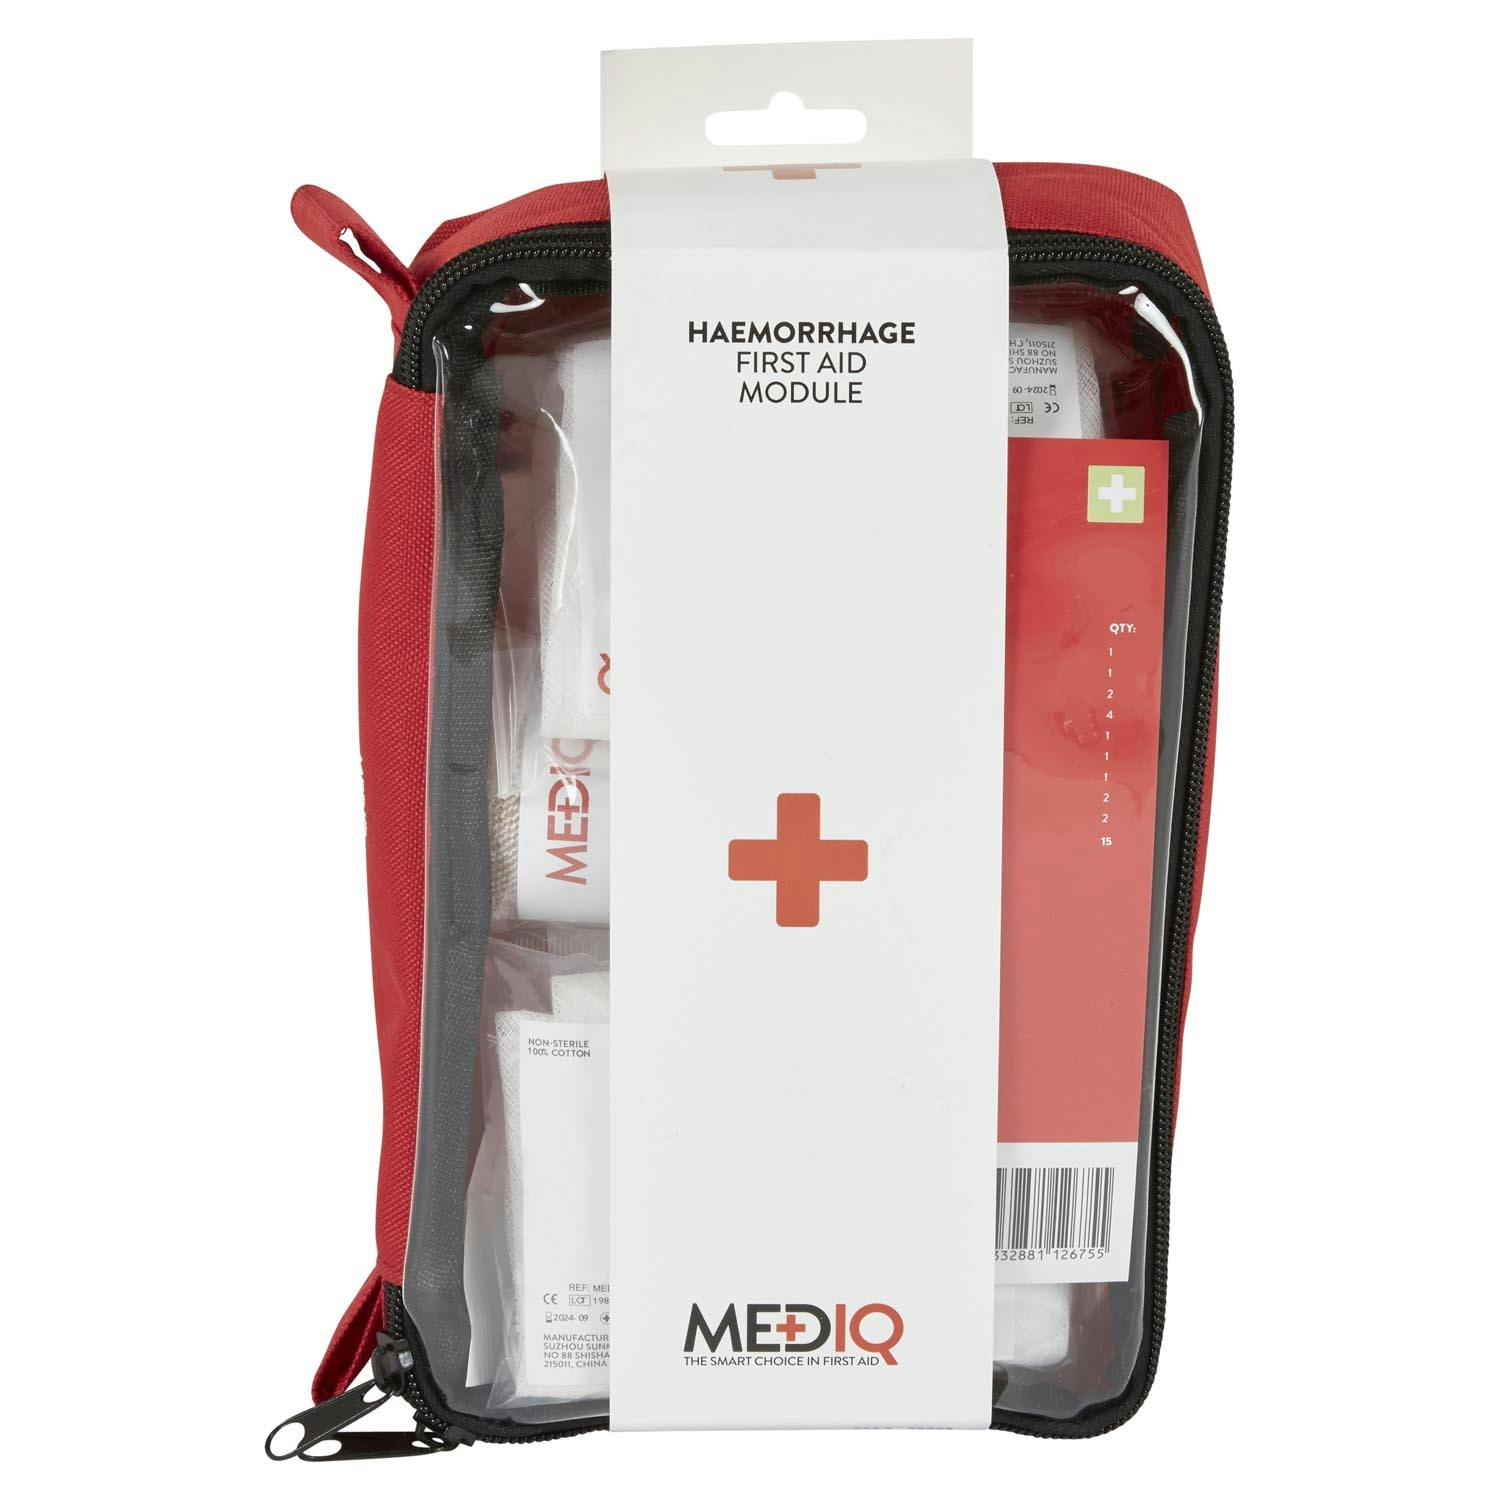 MEDIQ Haemorrhage (Major Bleeding) Module Unit In Soft Pack